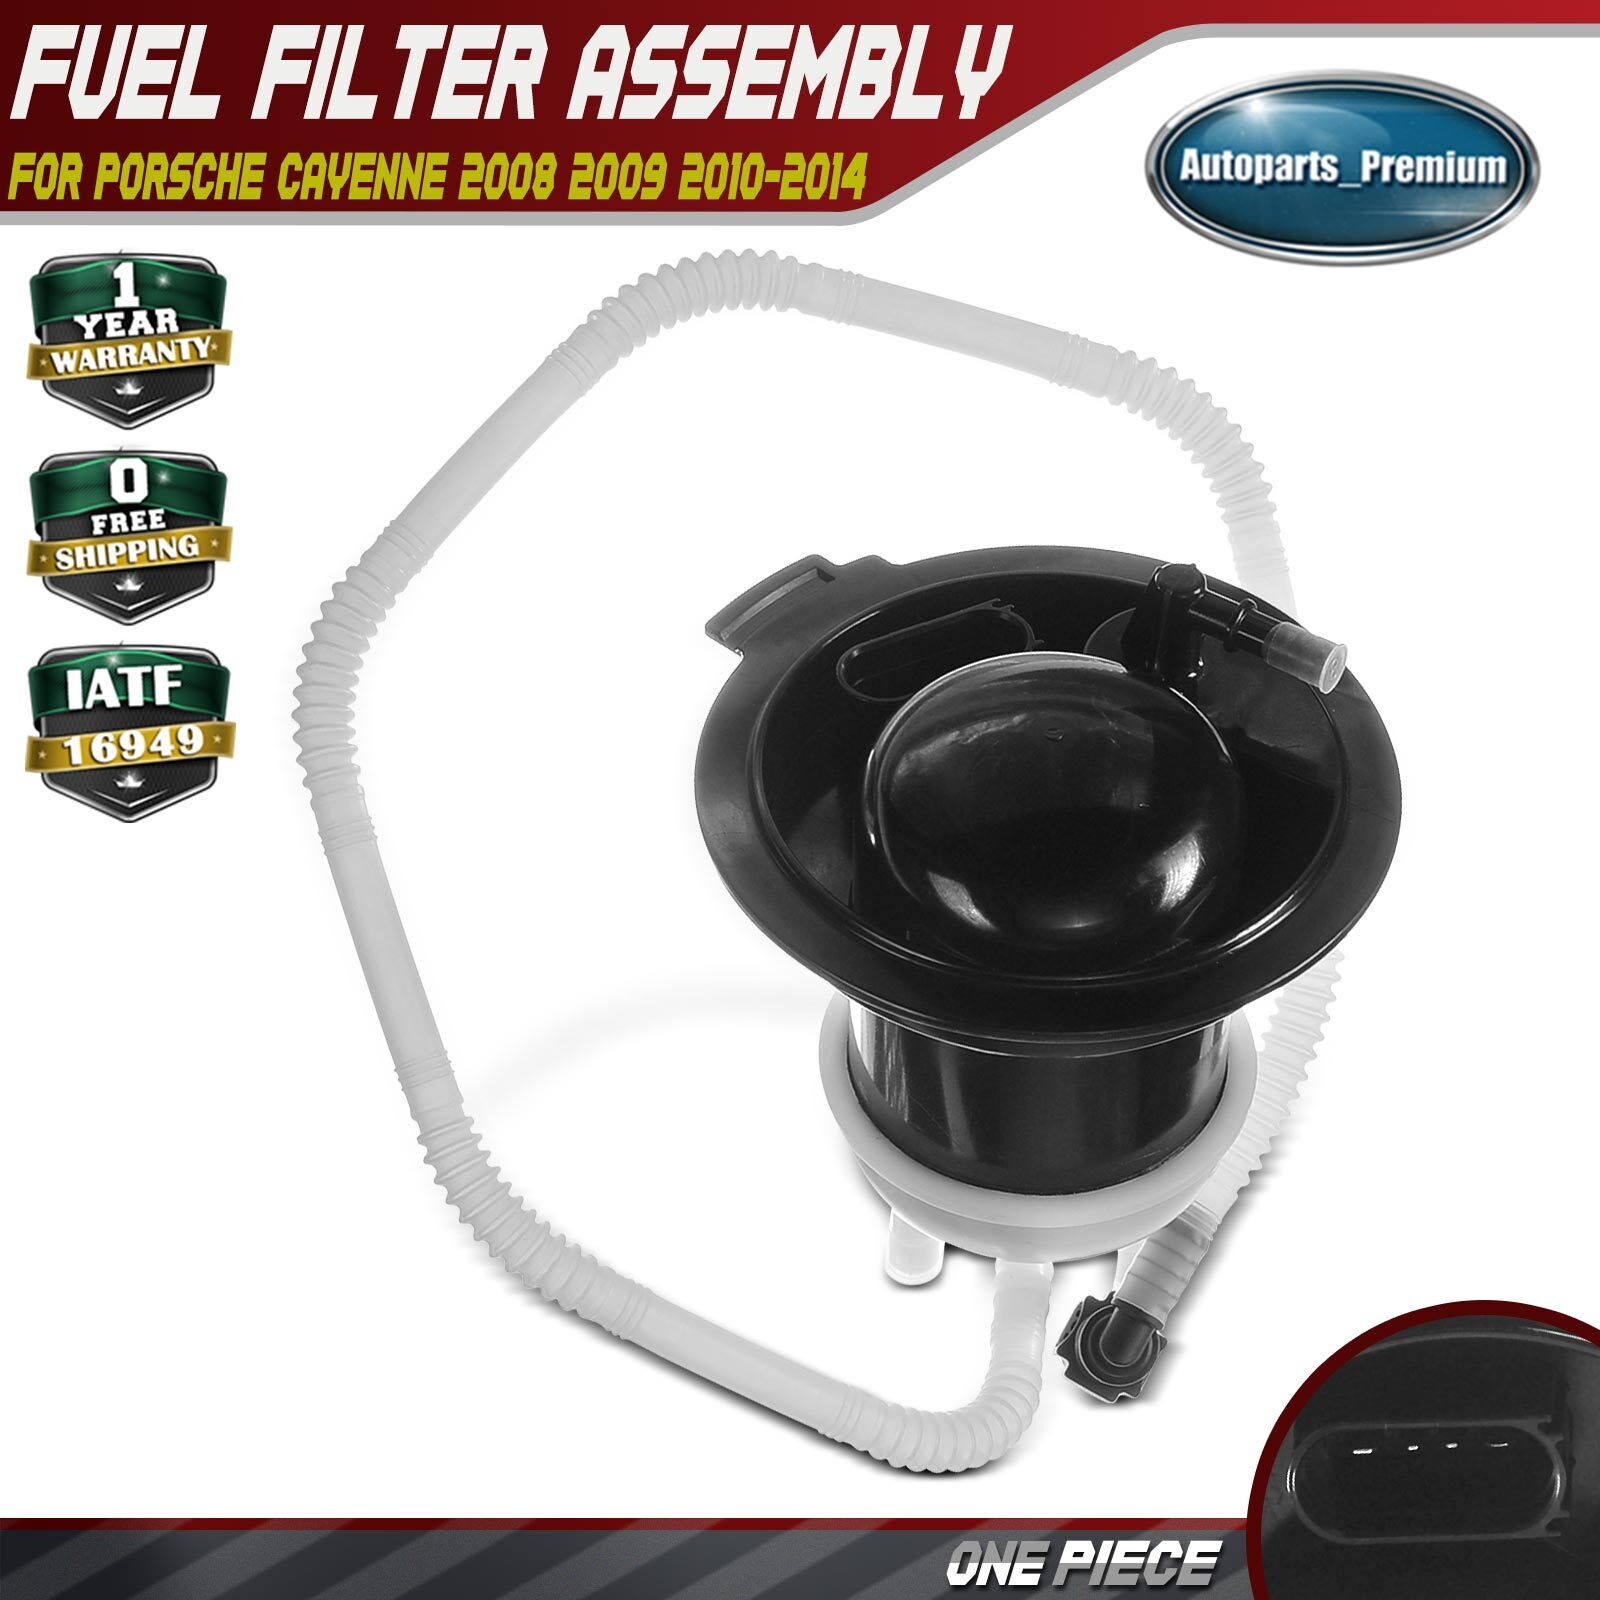 Fuel Filter Assembly for Porsche Cayenne 2008-2014 3.0L 3.6L 4.8L 7L5919679